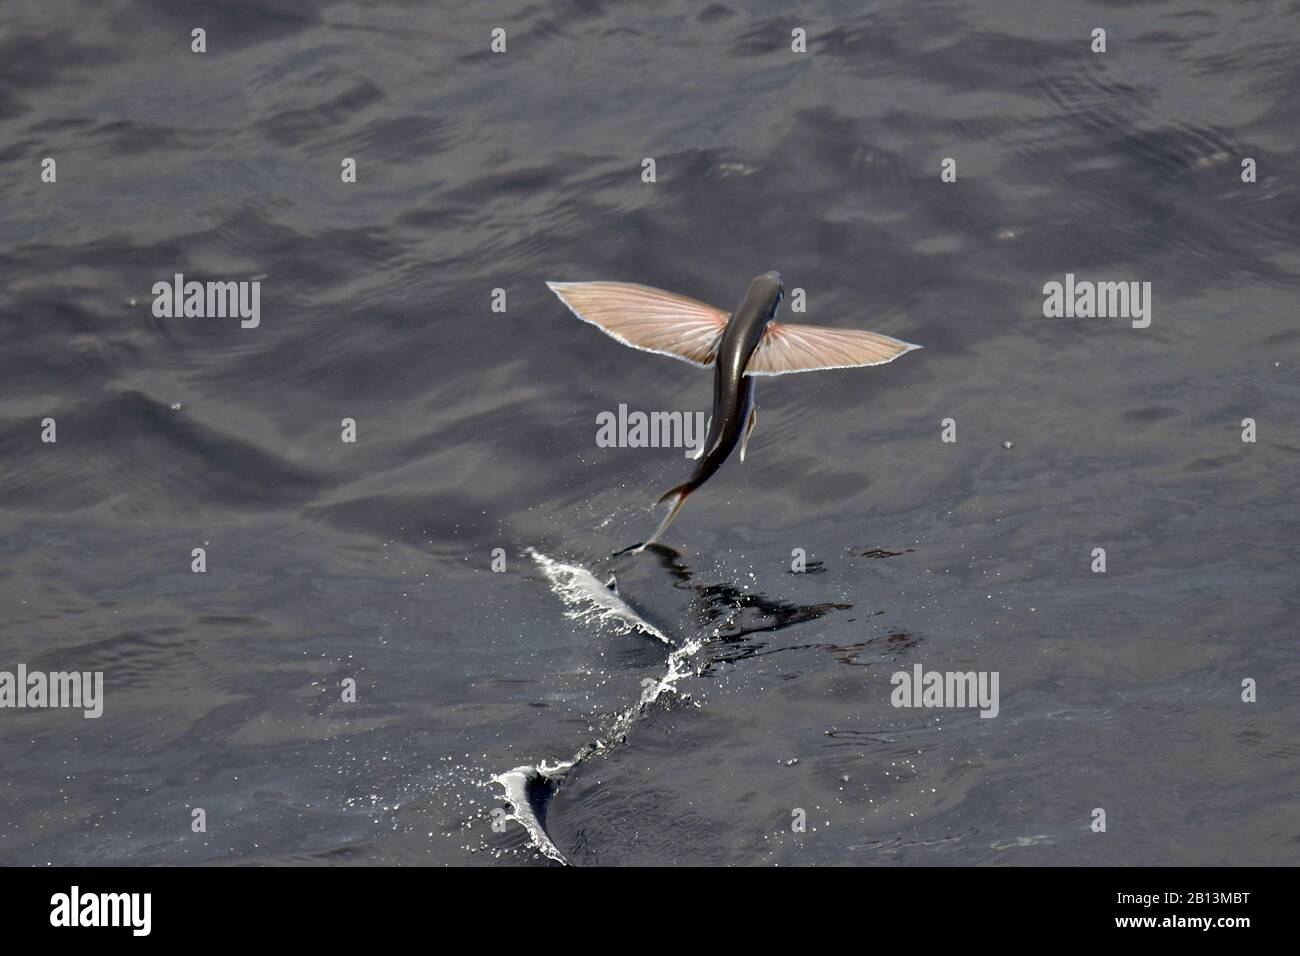 Espèces de poissons volants qui s'envolent de la surface de l'océan, l'océan Atlantique Banque D'Images